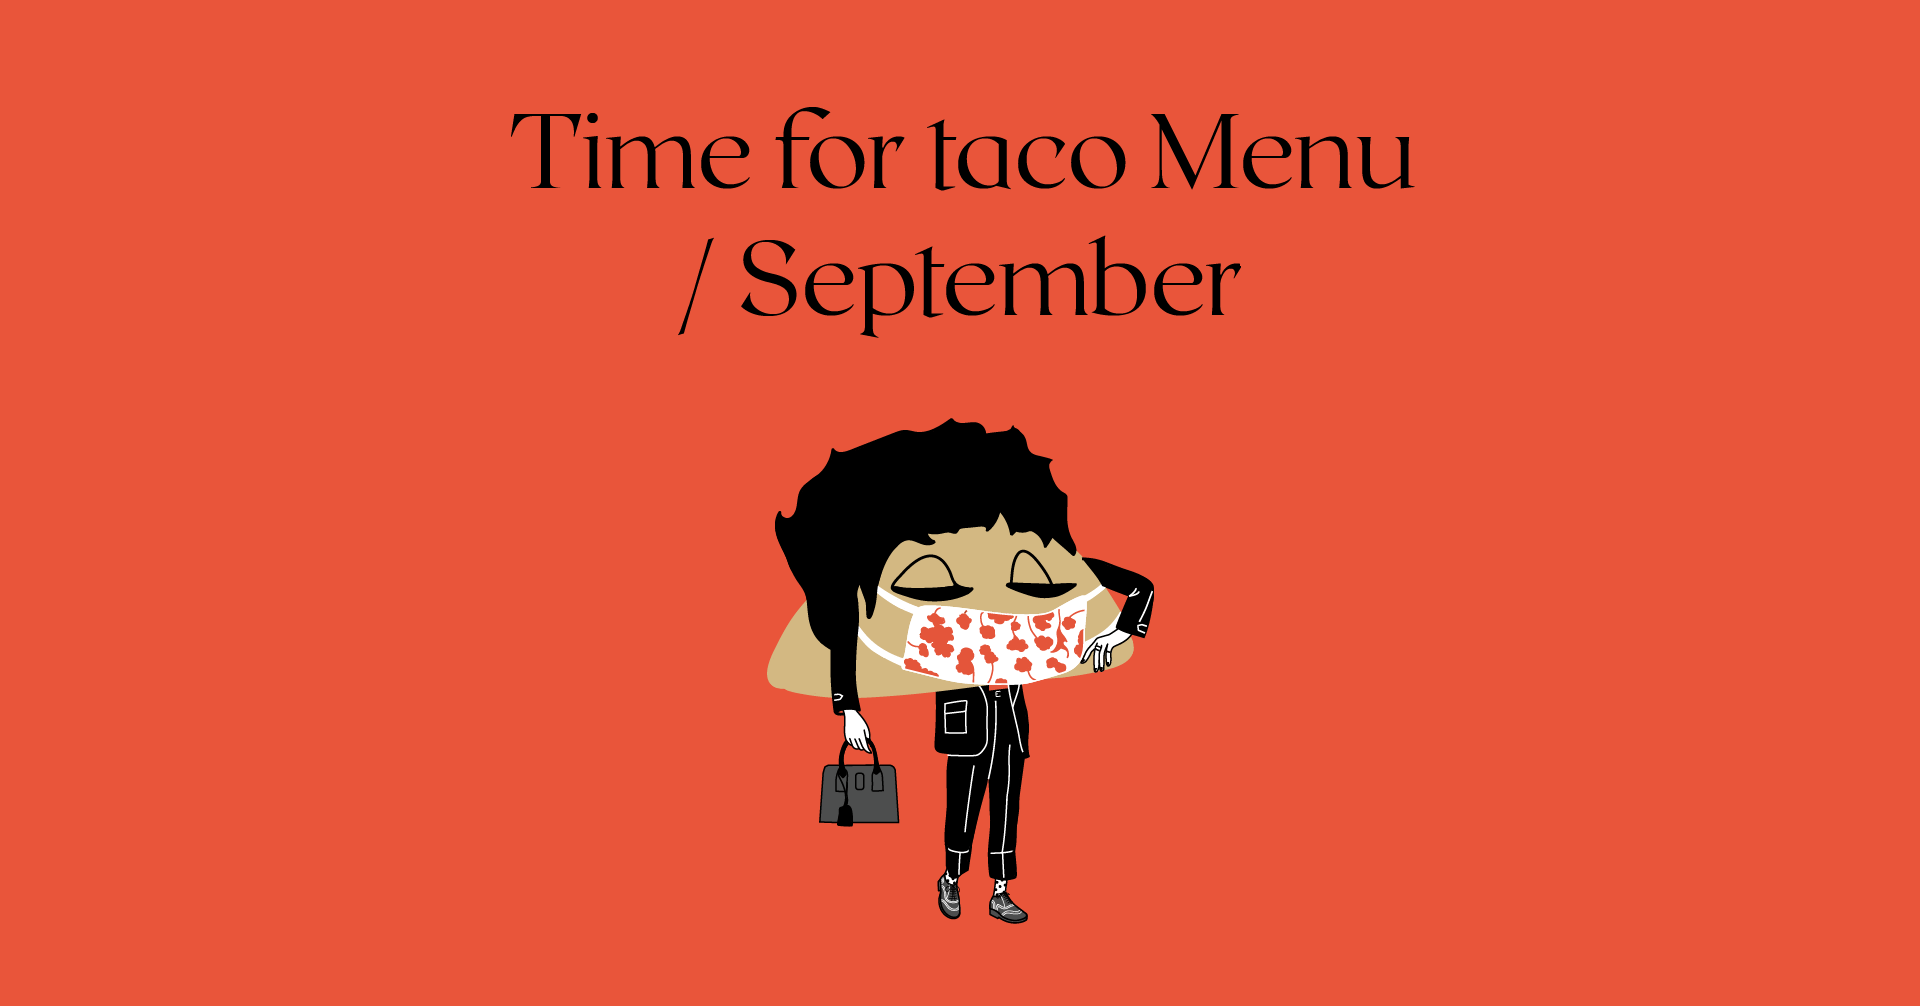 Time for taco Menu / September